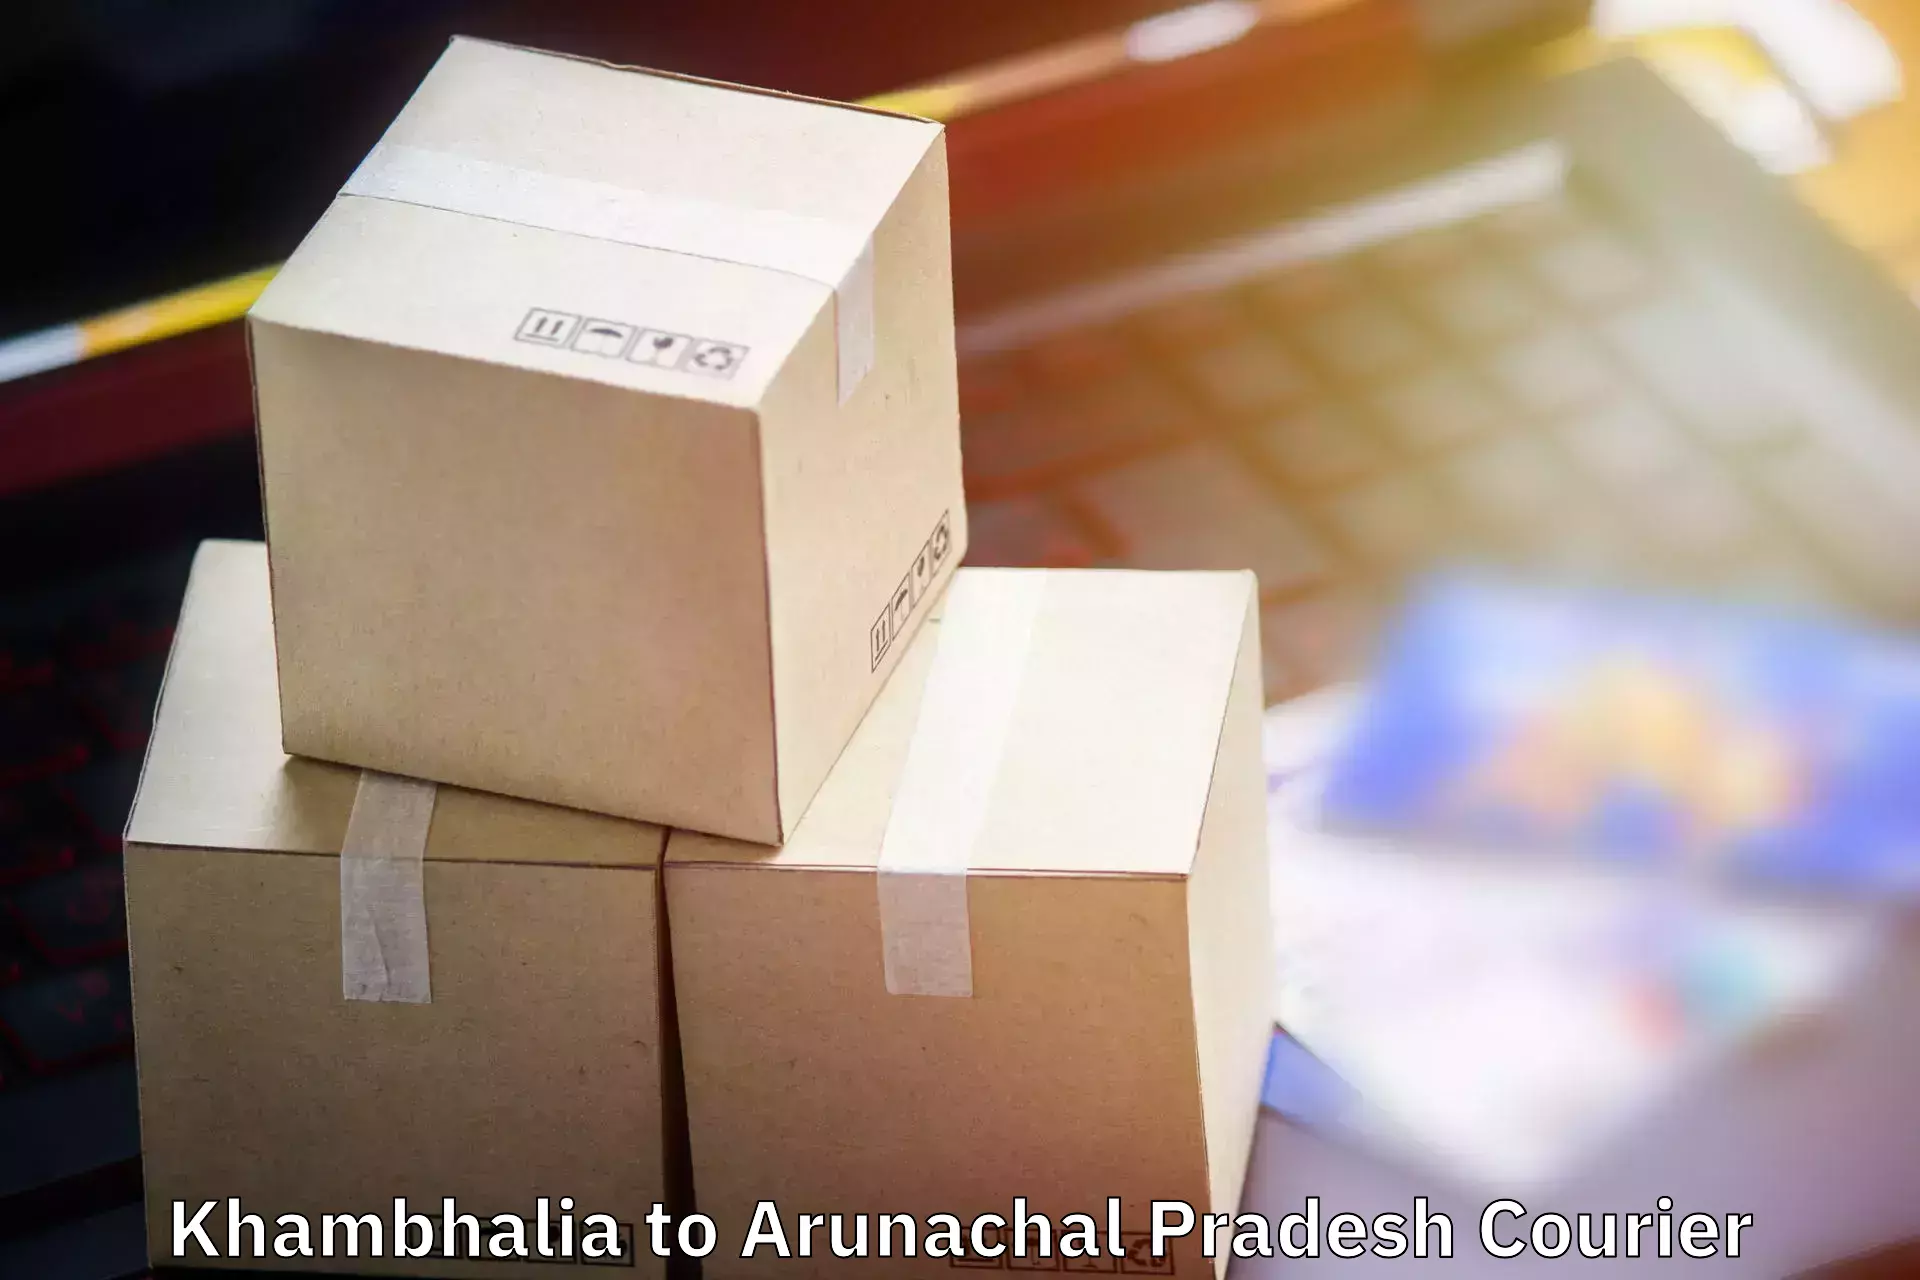 Luggage delivery system Khambhalia to Lower Subansiri